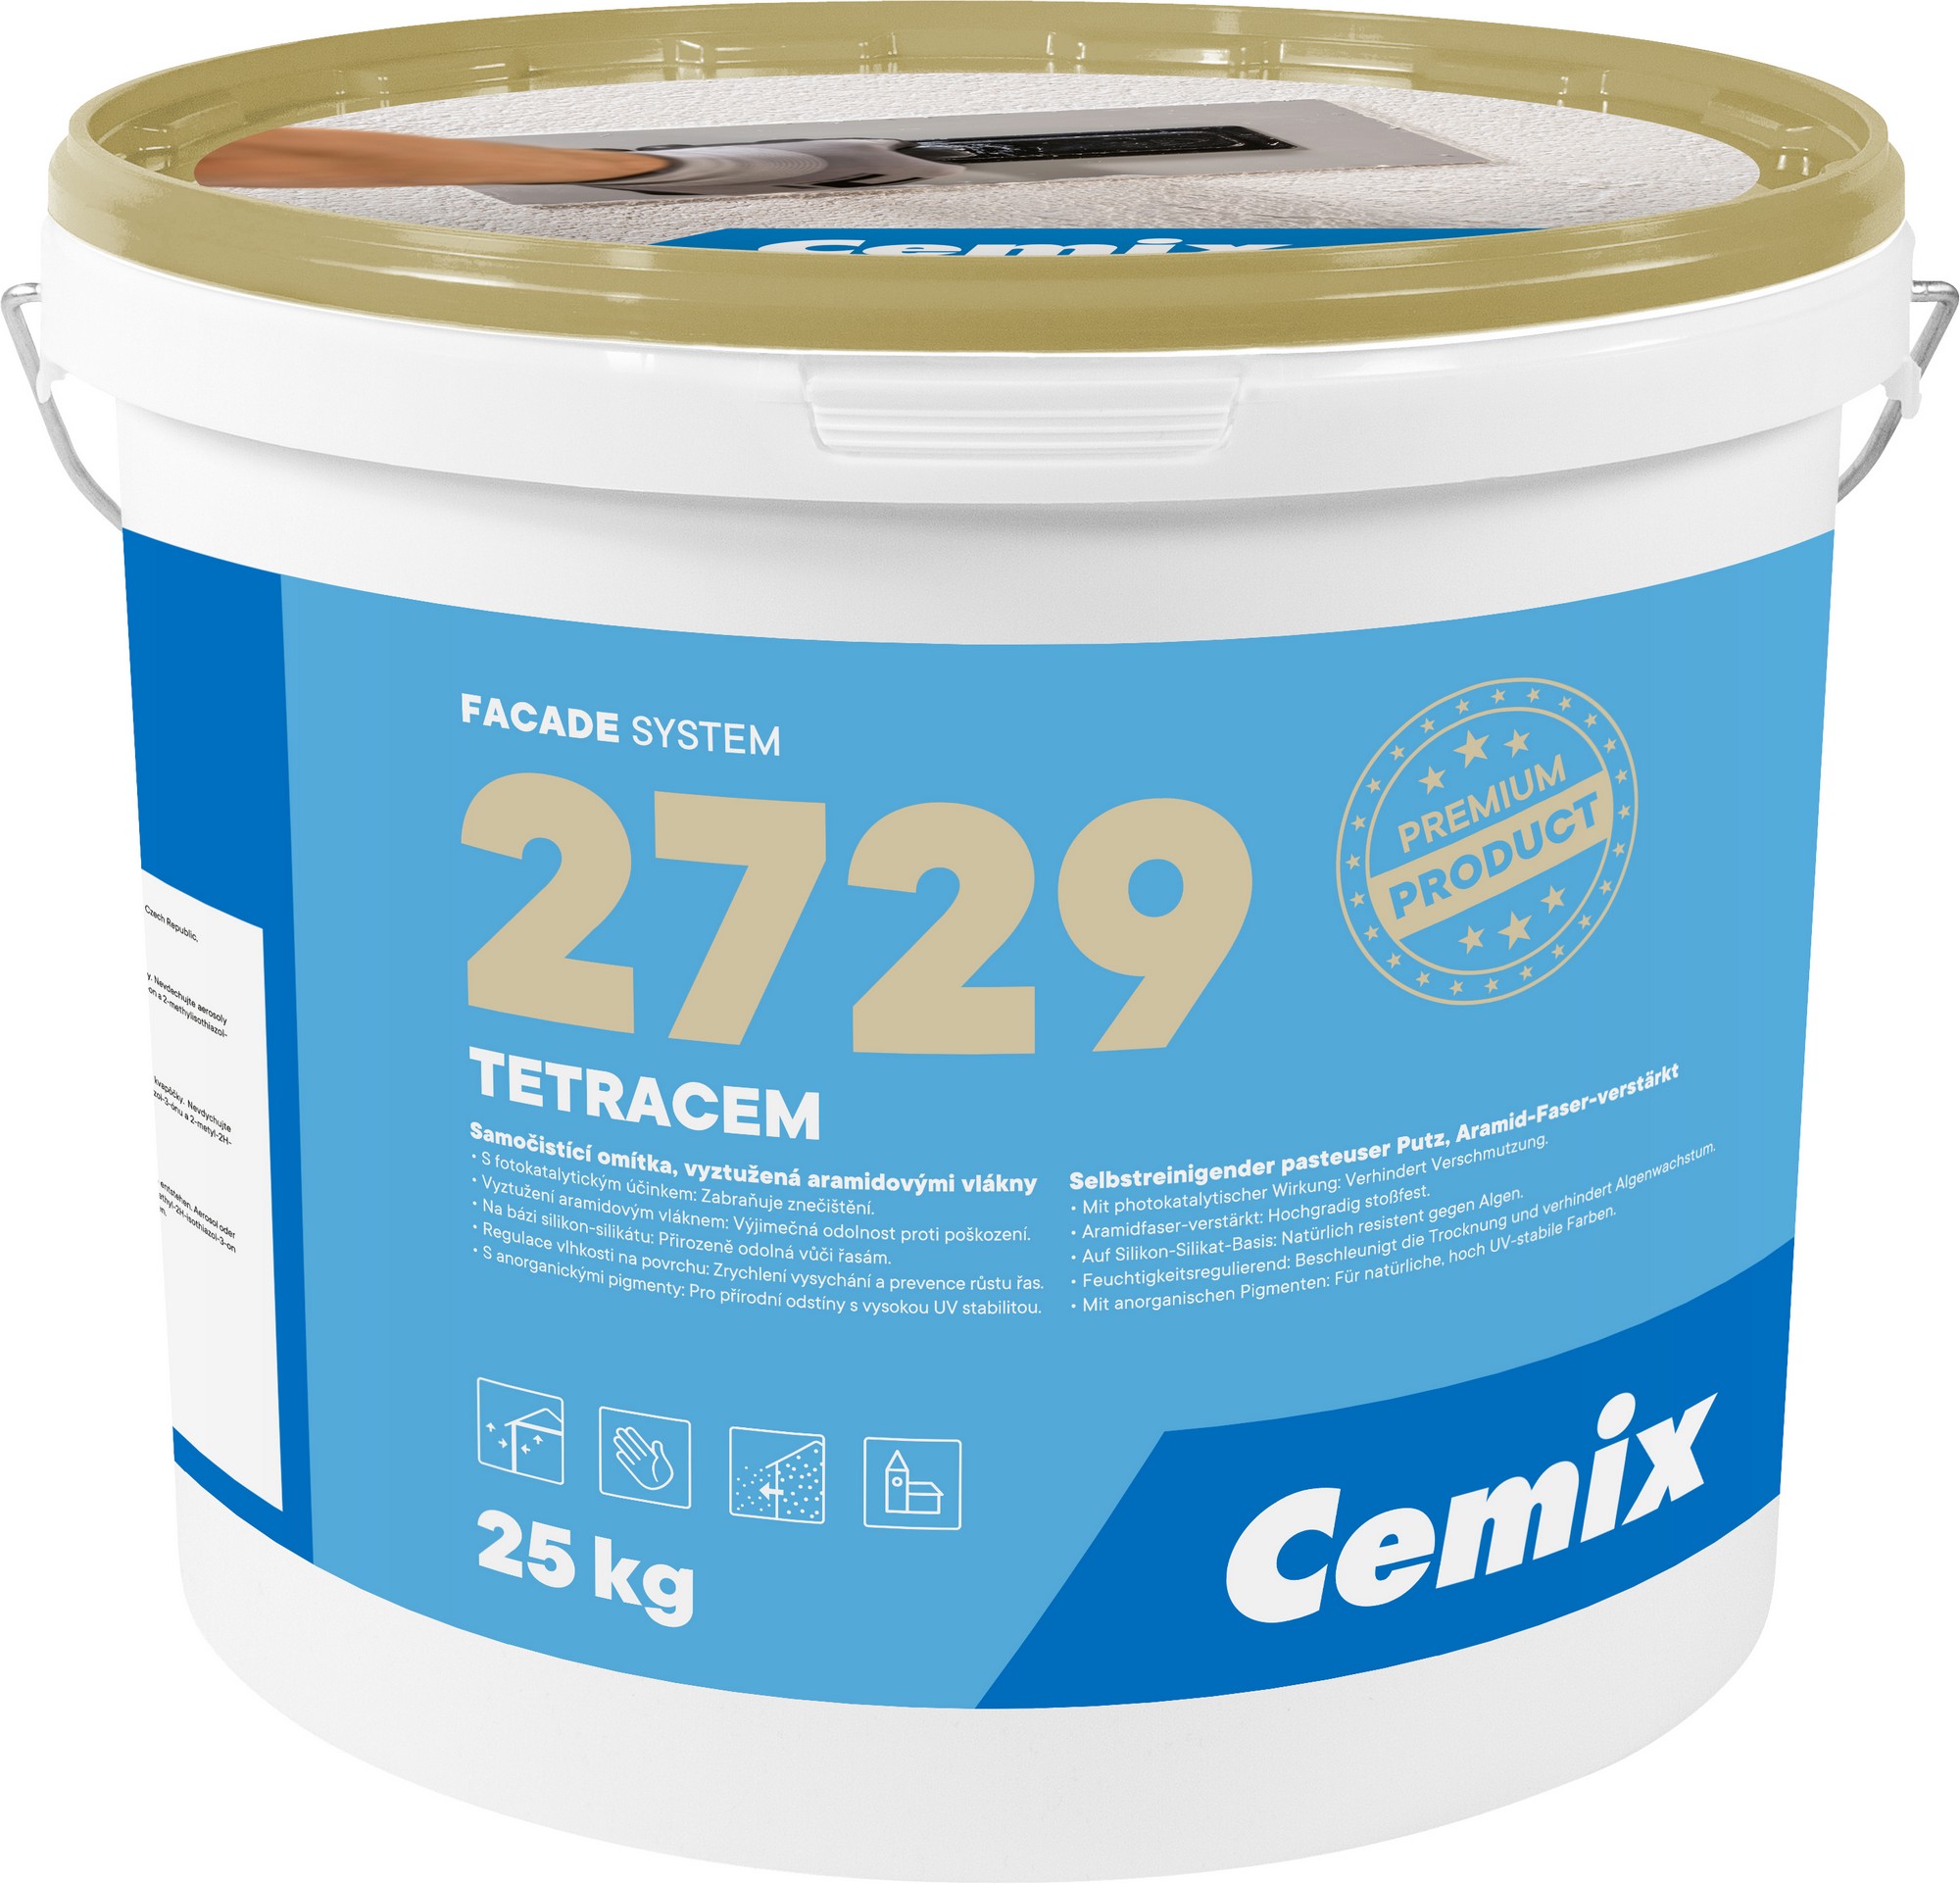 Omítka samočisticí Cemix 2729 TETRACEM Z 1,5 mm přípl. 1, 25 kg